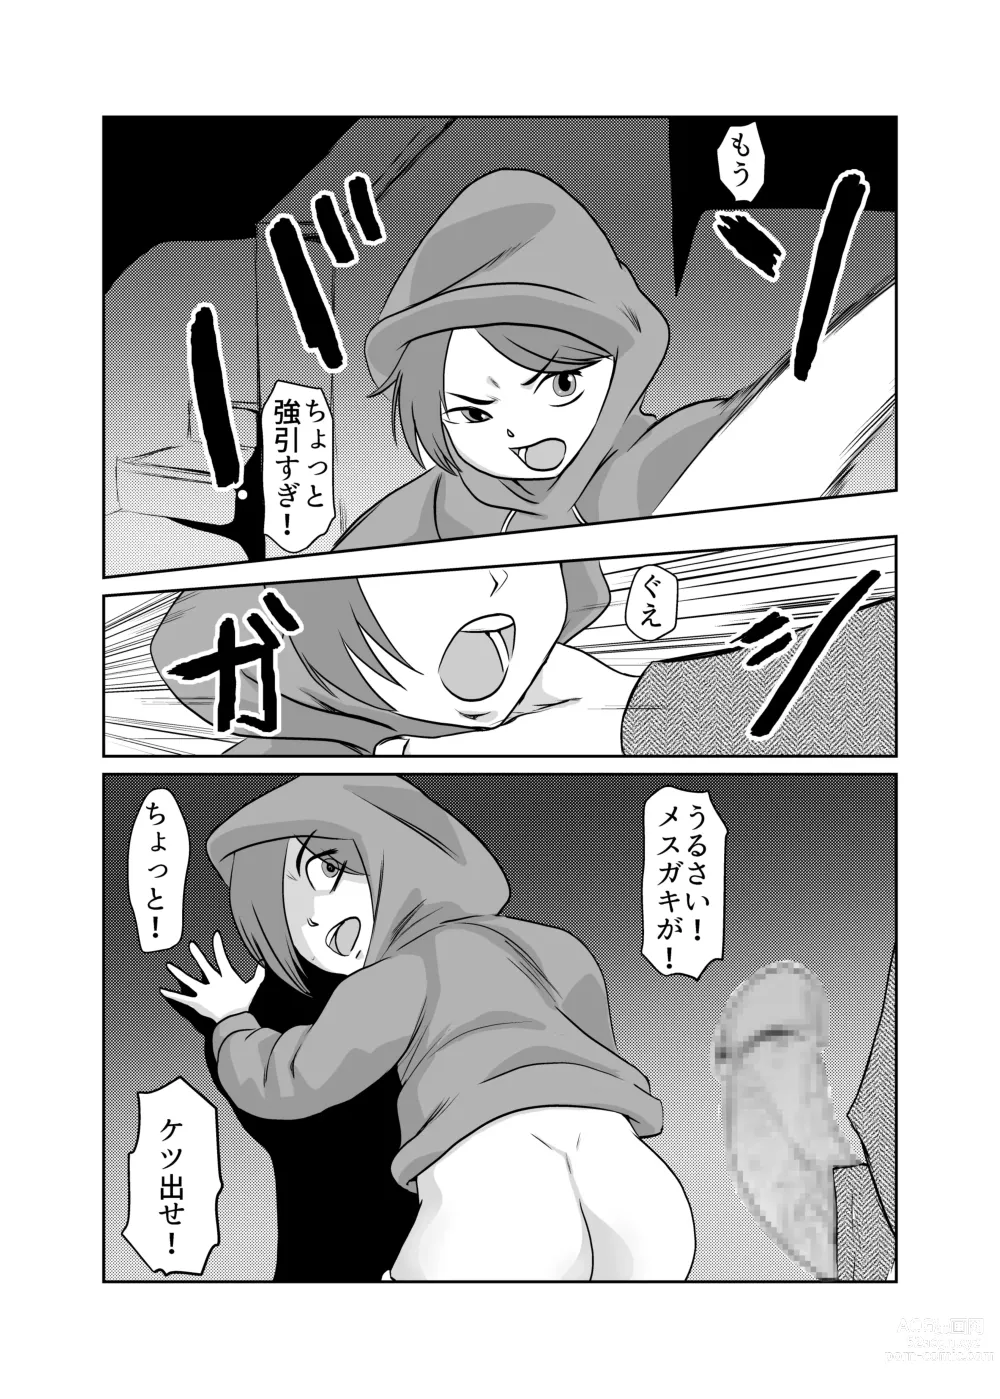 Page 12 of doujinshi Mahoroba Danchi 02